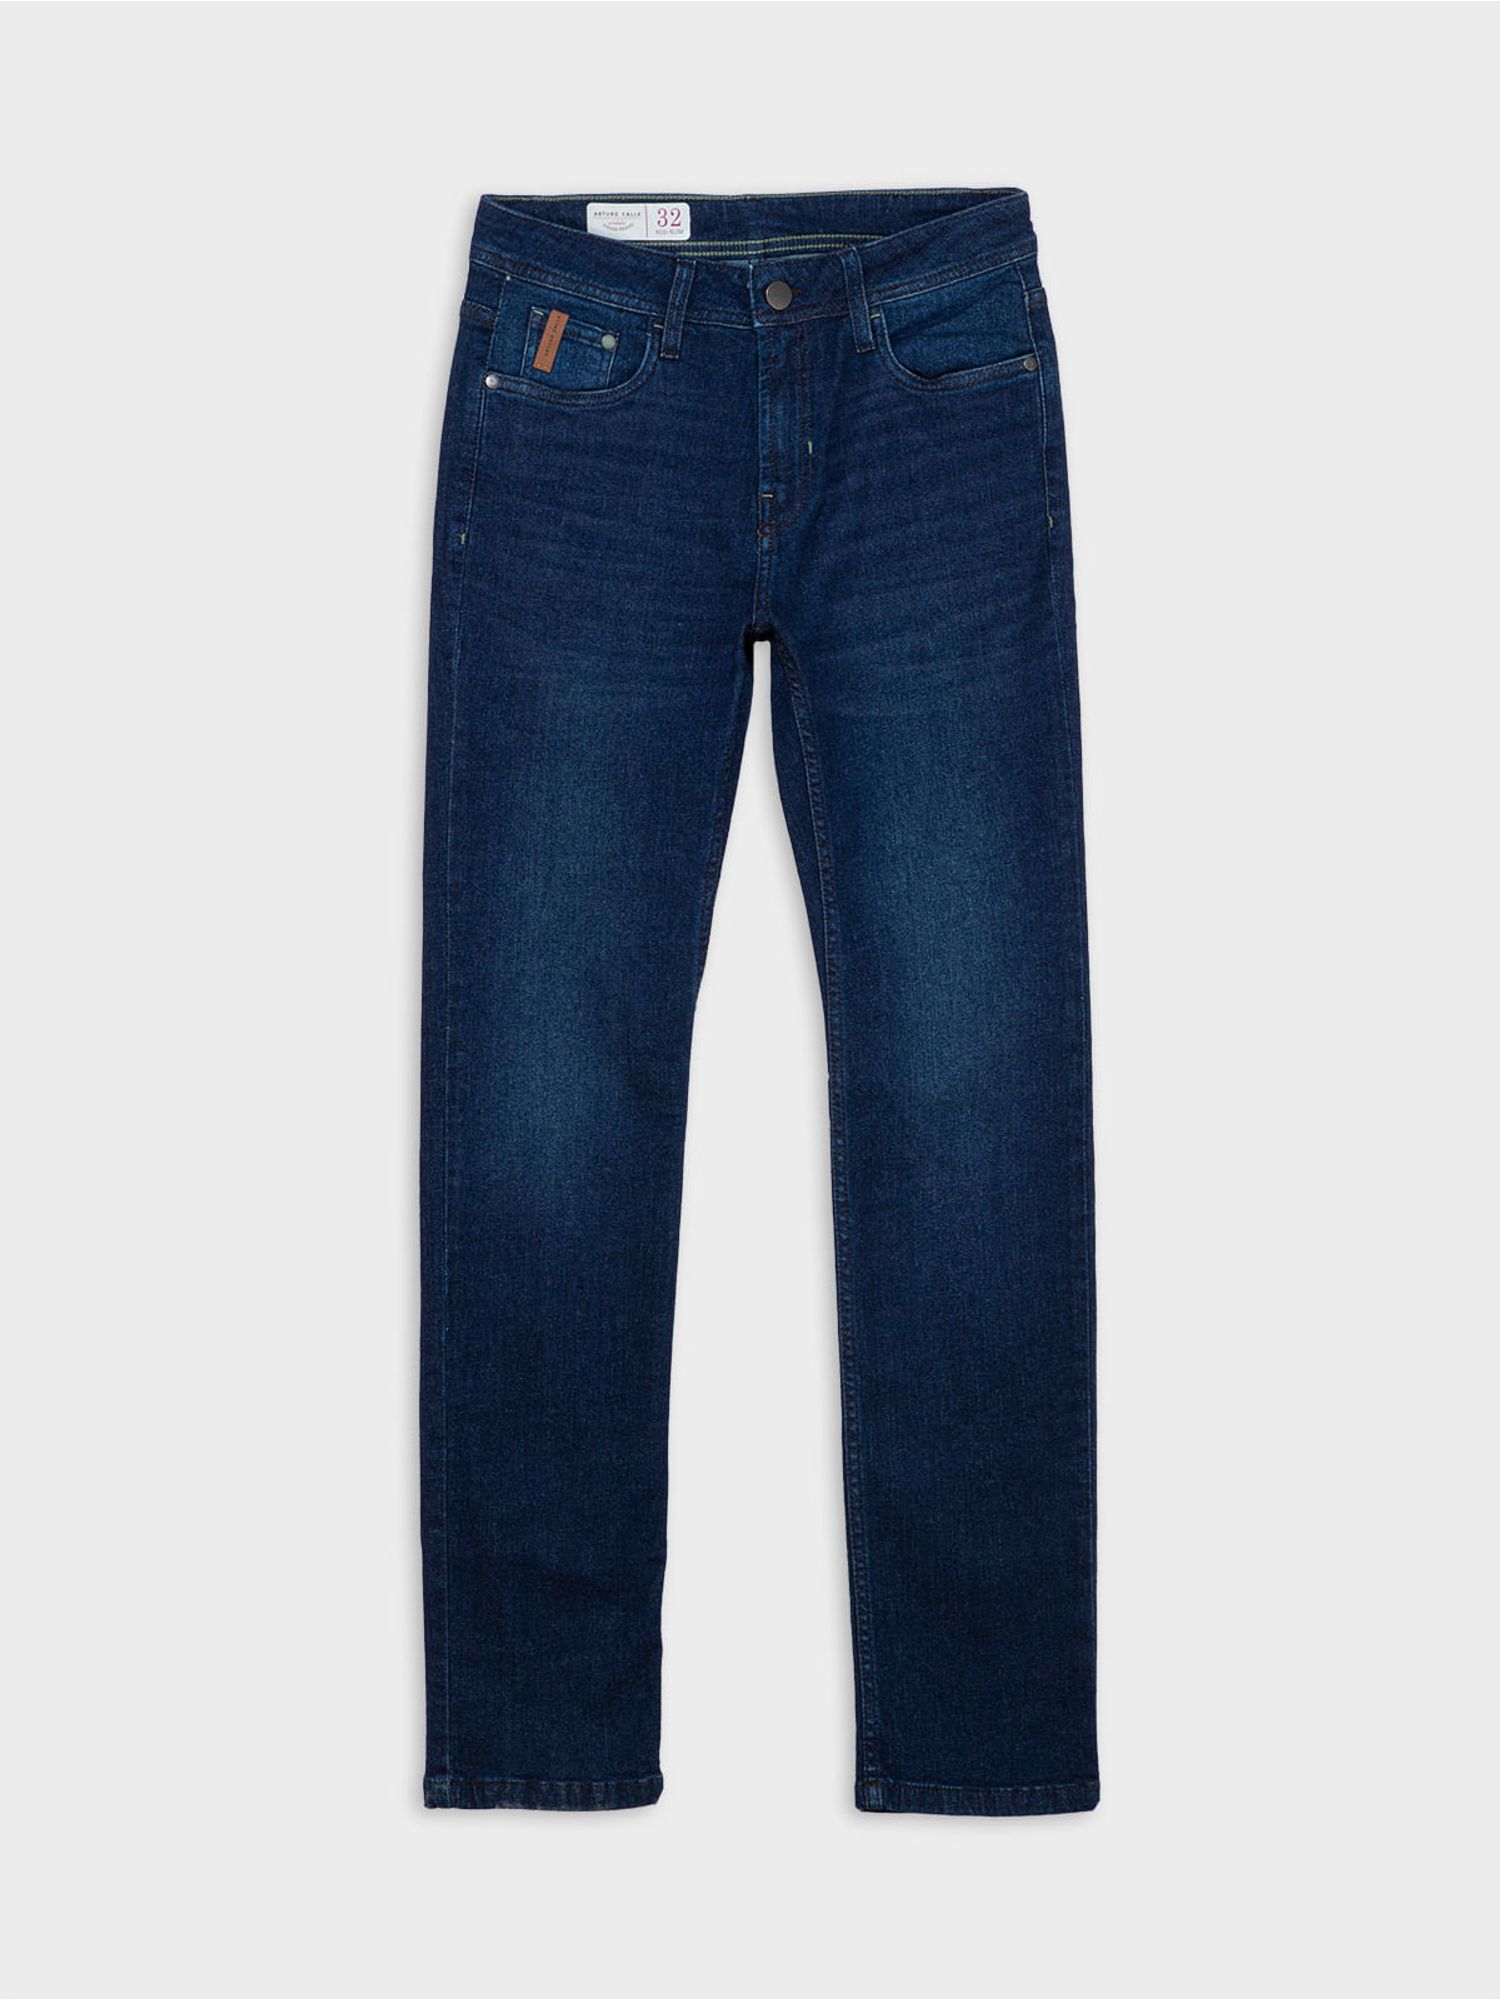 Pantalón de jeans clásico cintura alta ULALA1025 - ArturoPrendasPy